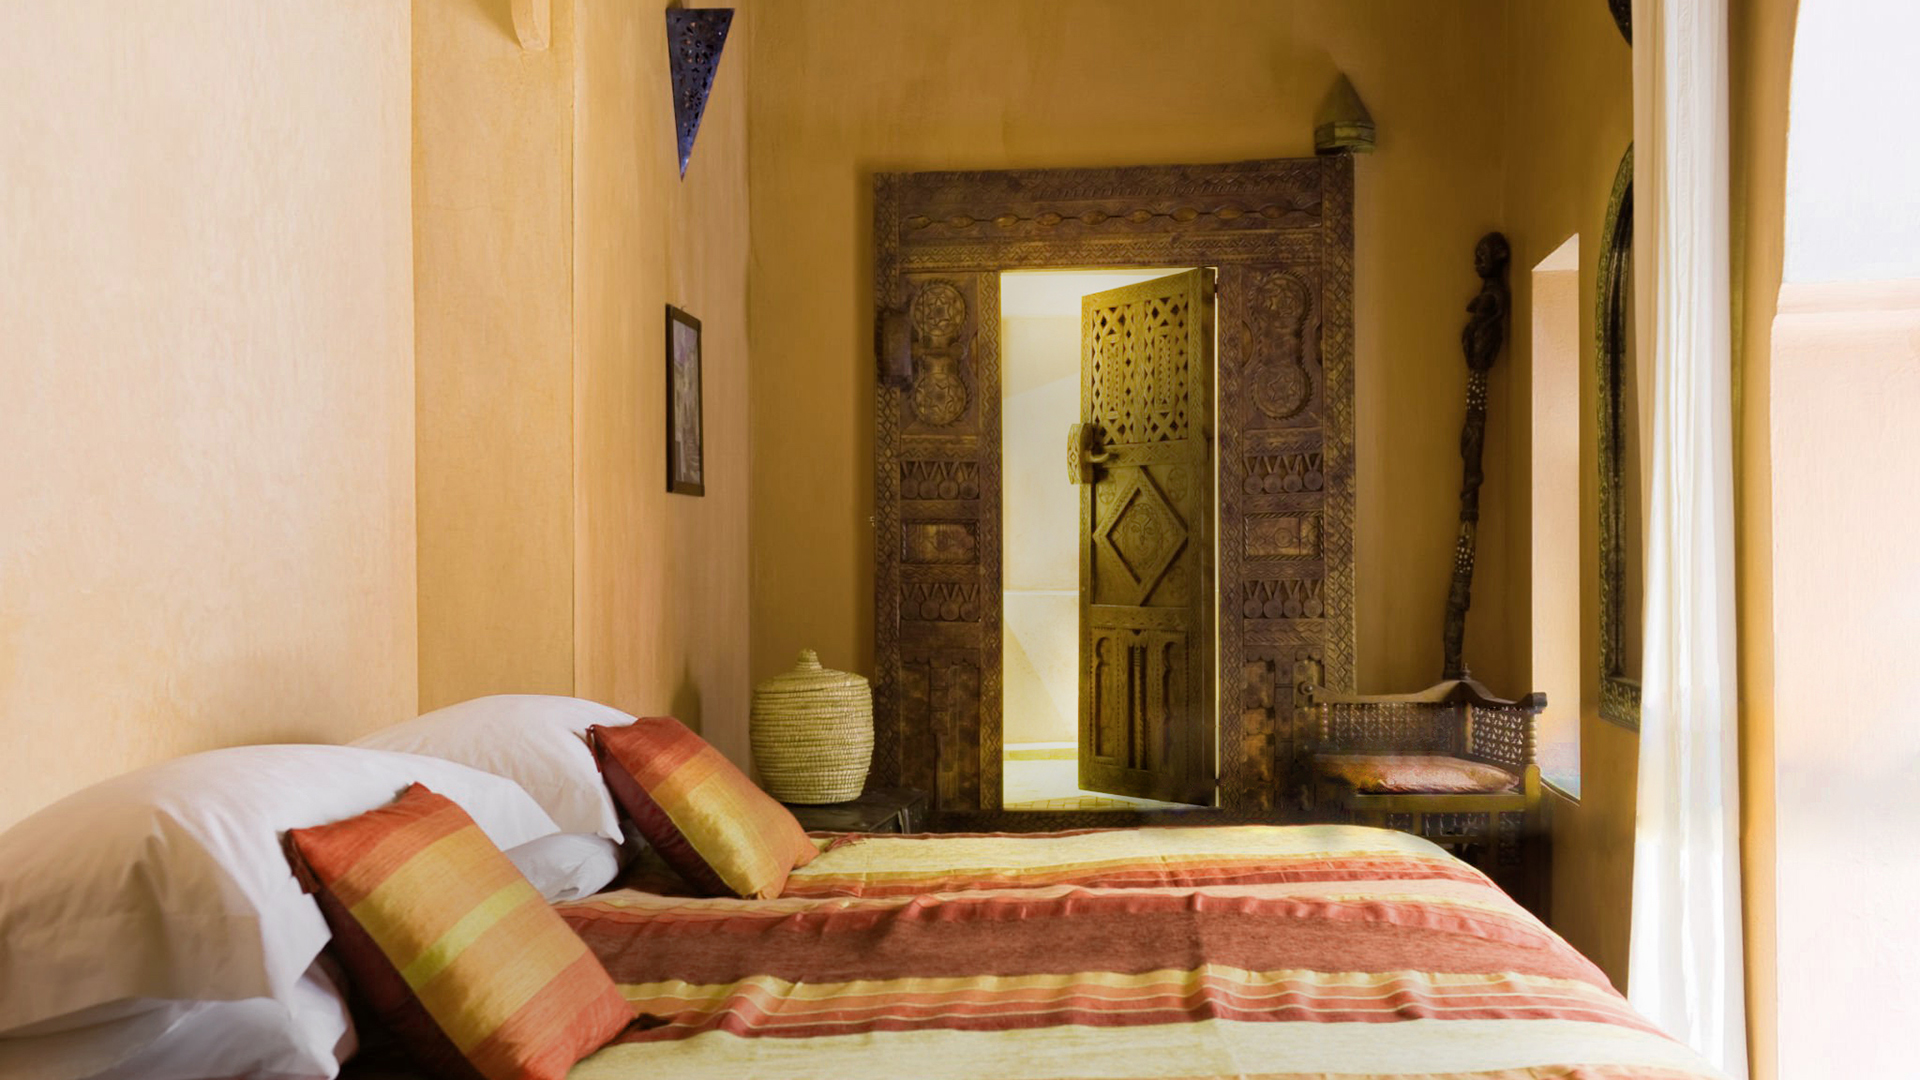 Camera da letto in stile arabo con tadelakt sulle pareti